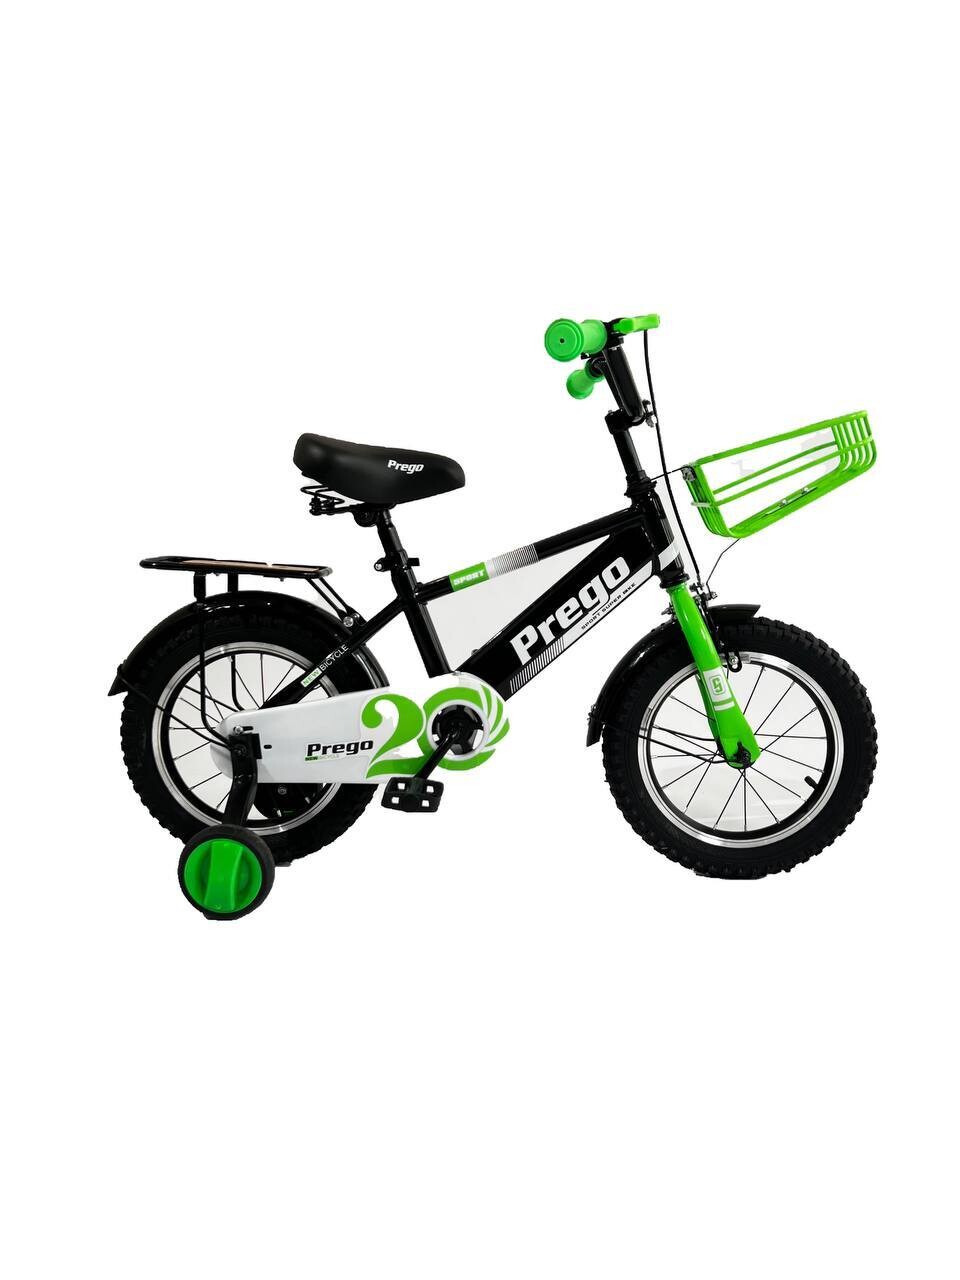 Двухколесный велосипед Prego 18D зеленый